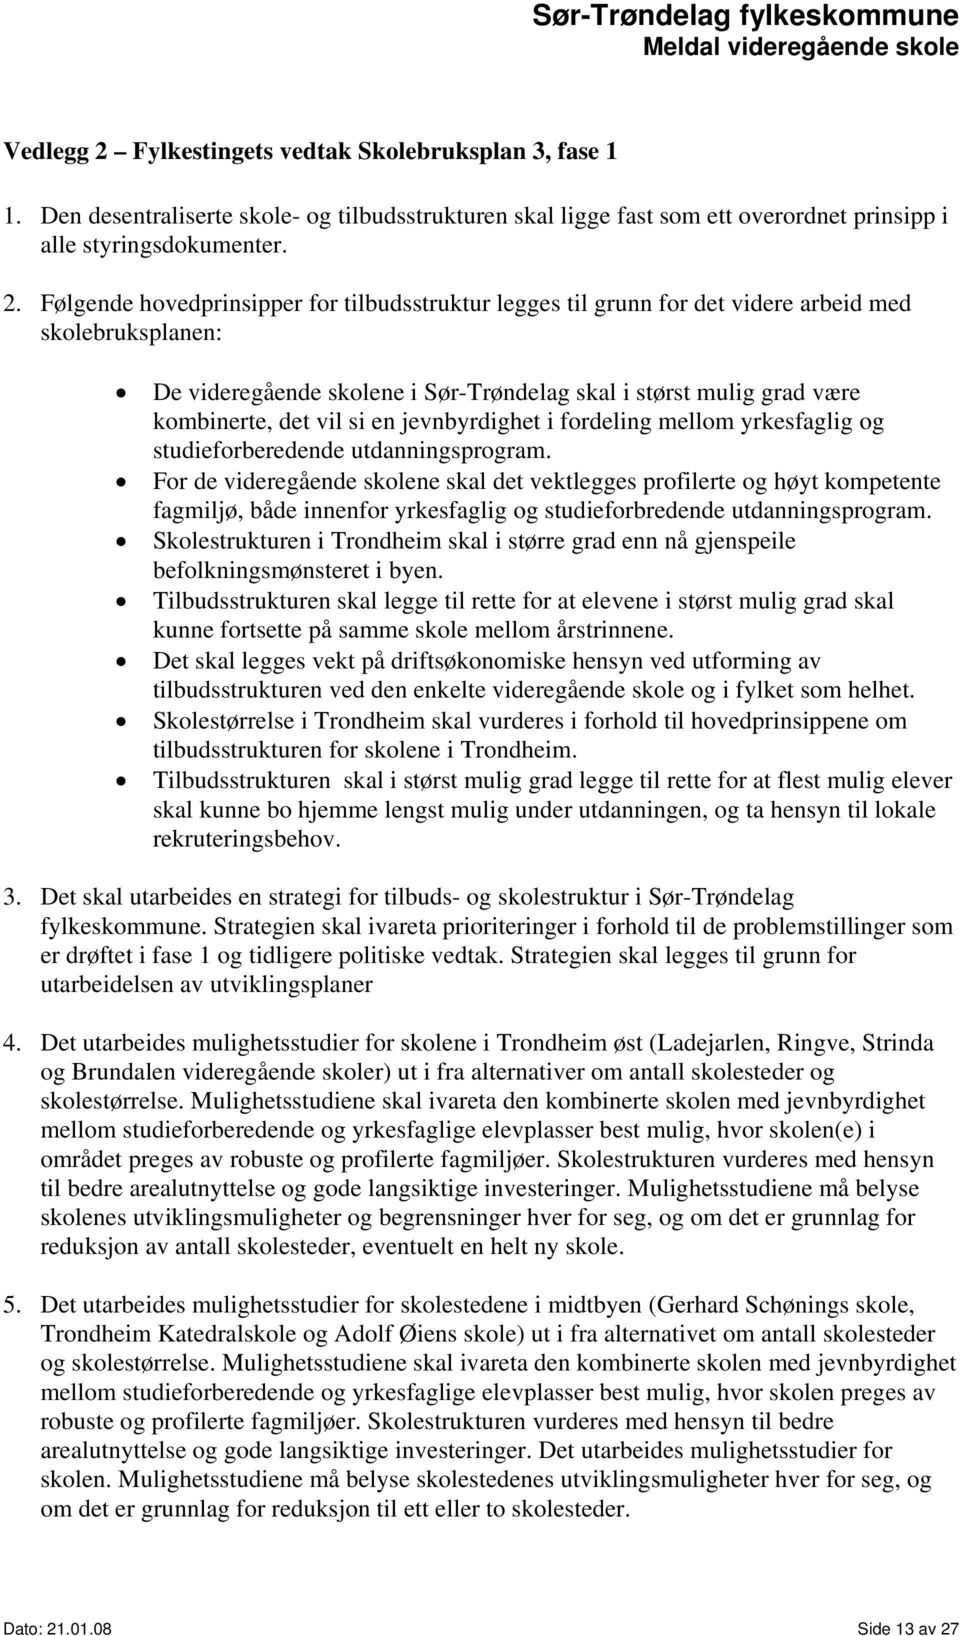 Følgende hovedprinsipper for tilbudsstruktur legges til grunn for det videre arbeid med skolebruksplanen: De videregående skolene i Sør-Trøndelag skal i størst mulig grad være kombinerte, det vil si